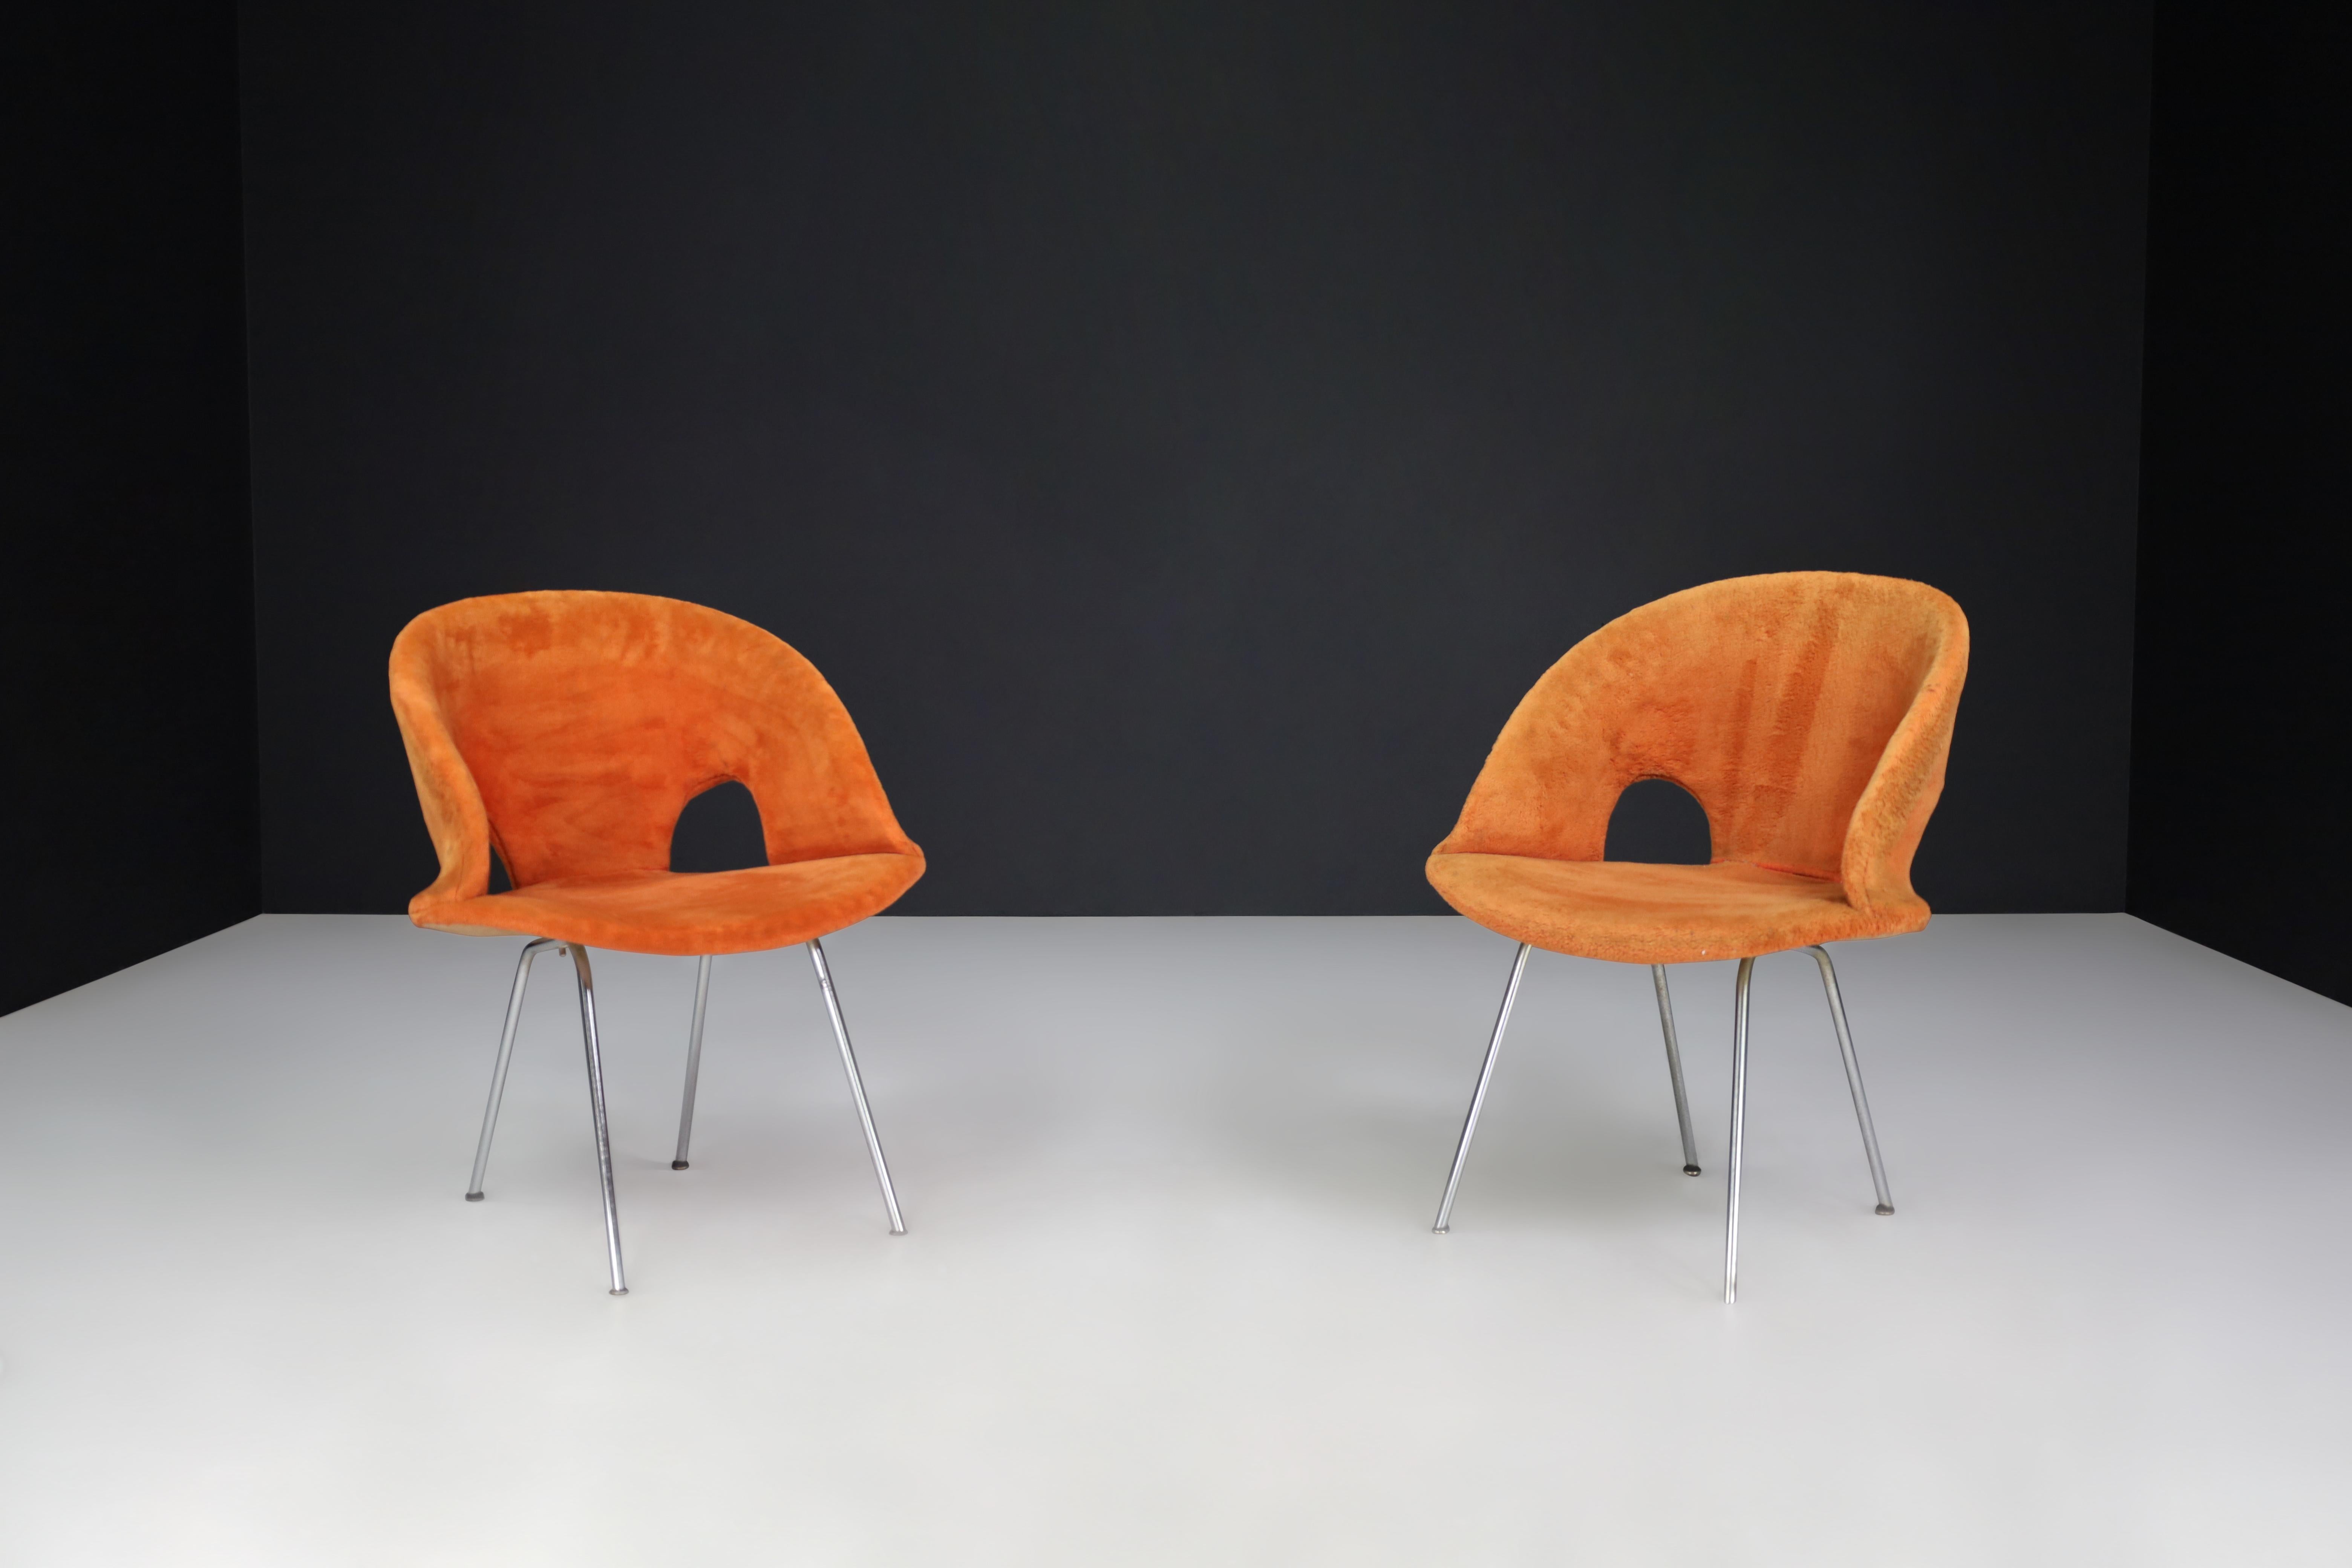 Chaises Model 350 de Arno Votteler pour Walter Knoll, Allemagne, années 1950 

Il s'agit d'une paire de chaises originales, modèle 350, conçues par Arno Votteler pour Walter Knoll. Ils sont rares et dans leur état d'origine, mais nous vous